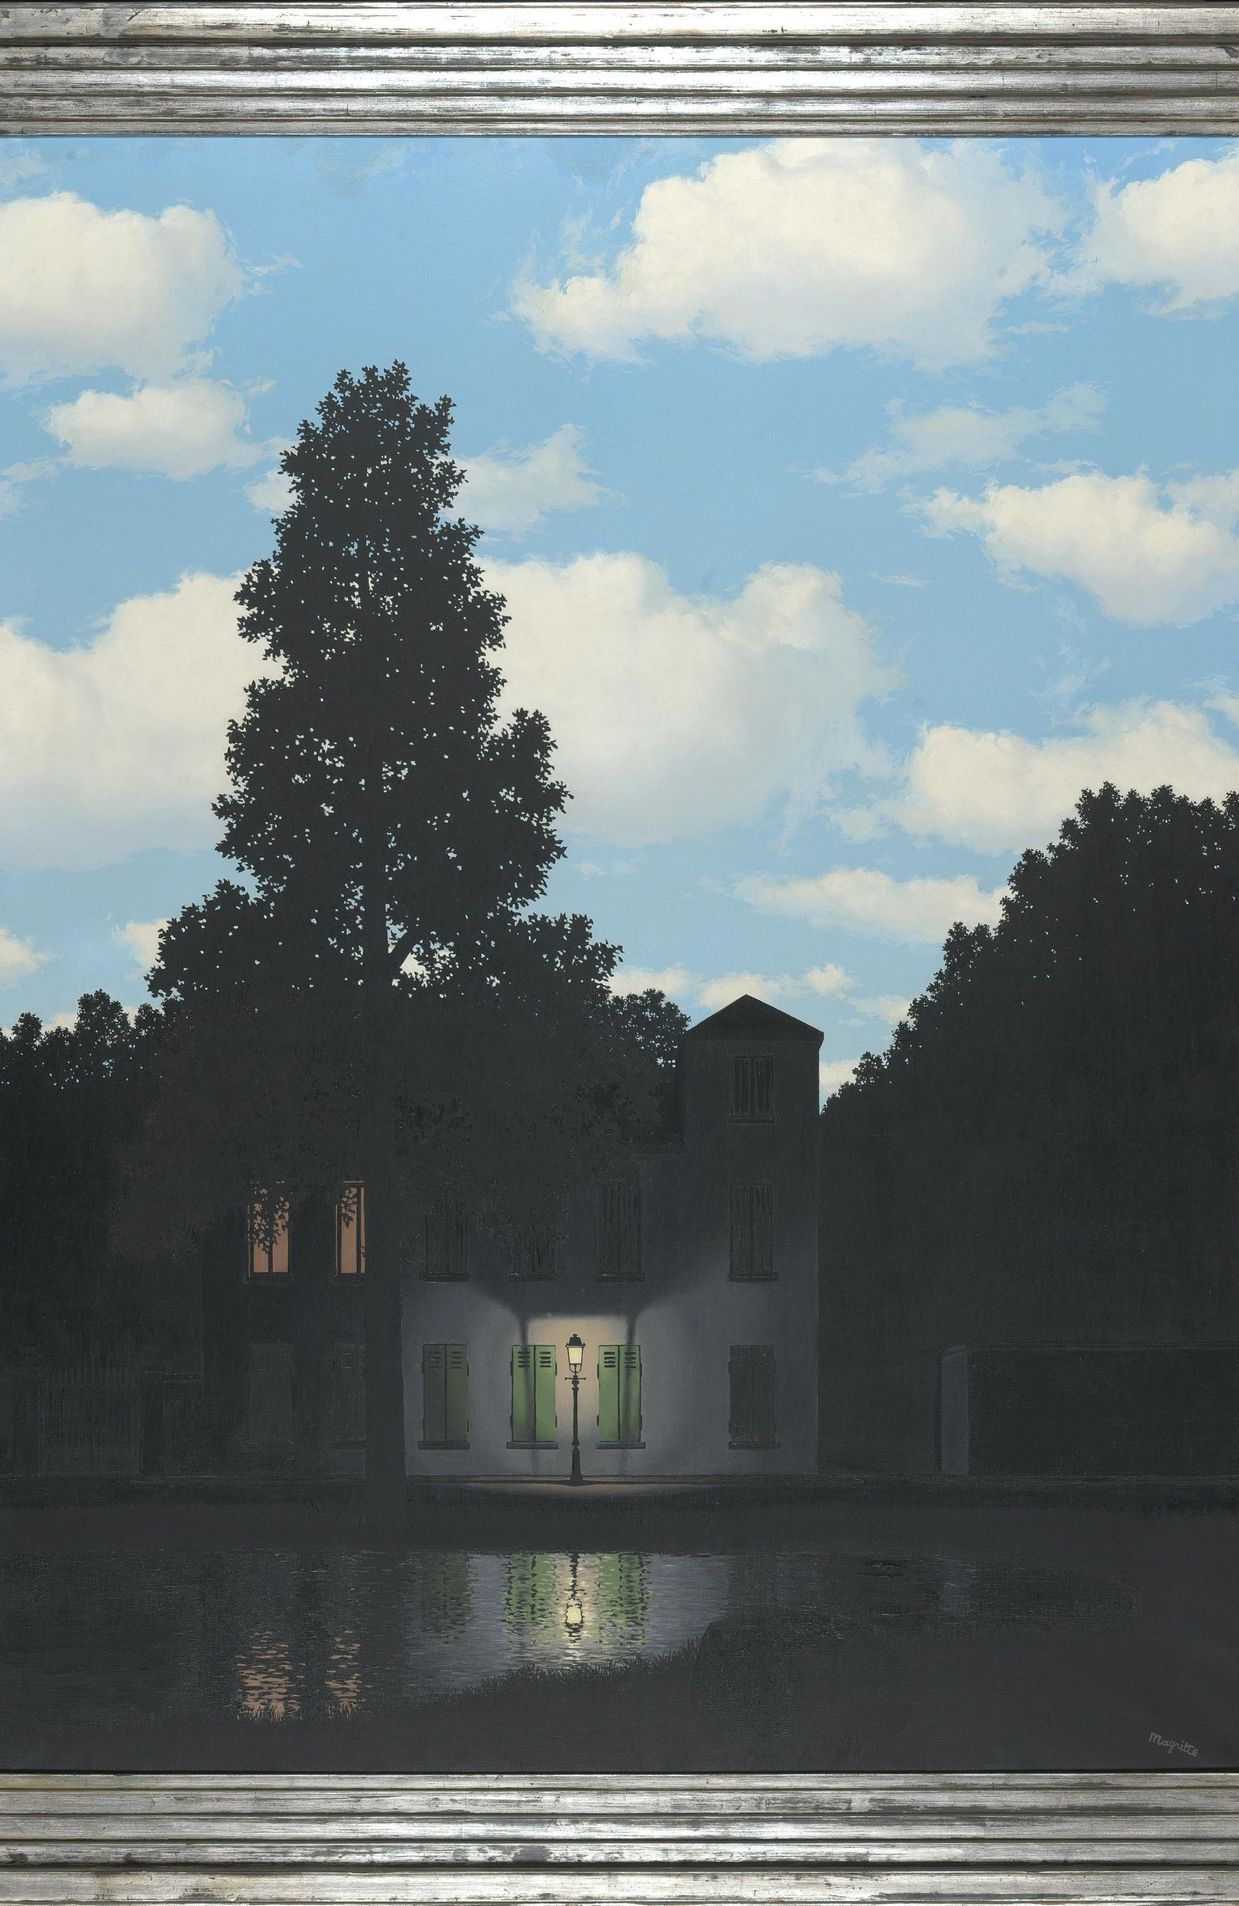 René Magritte, L’empire des lumières, 1954, huile sur toile, inv. 6715, MRBAB, Bruxelles, photo : J.Geleyns / Ro scan